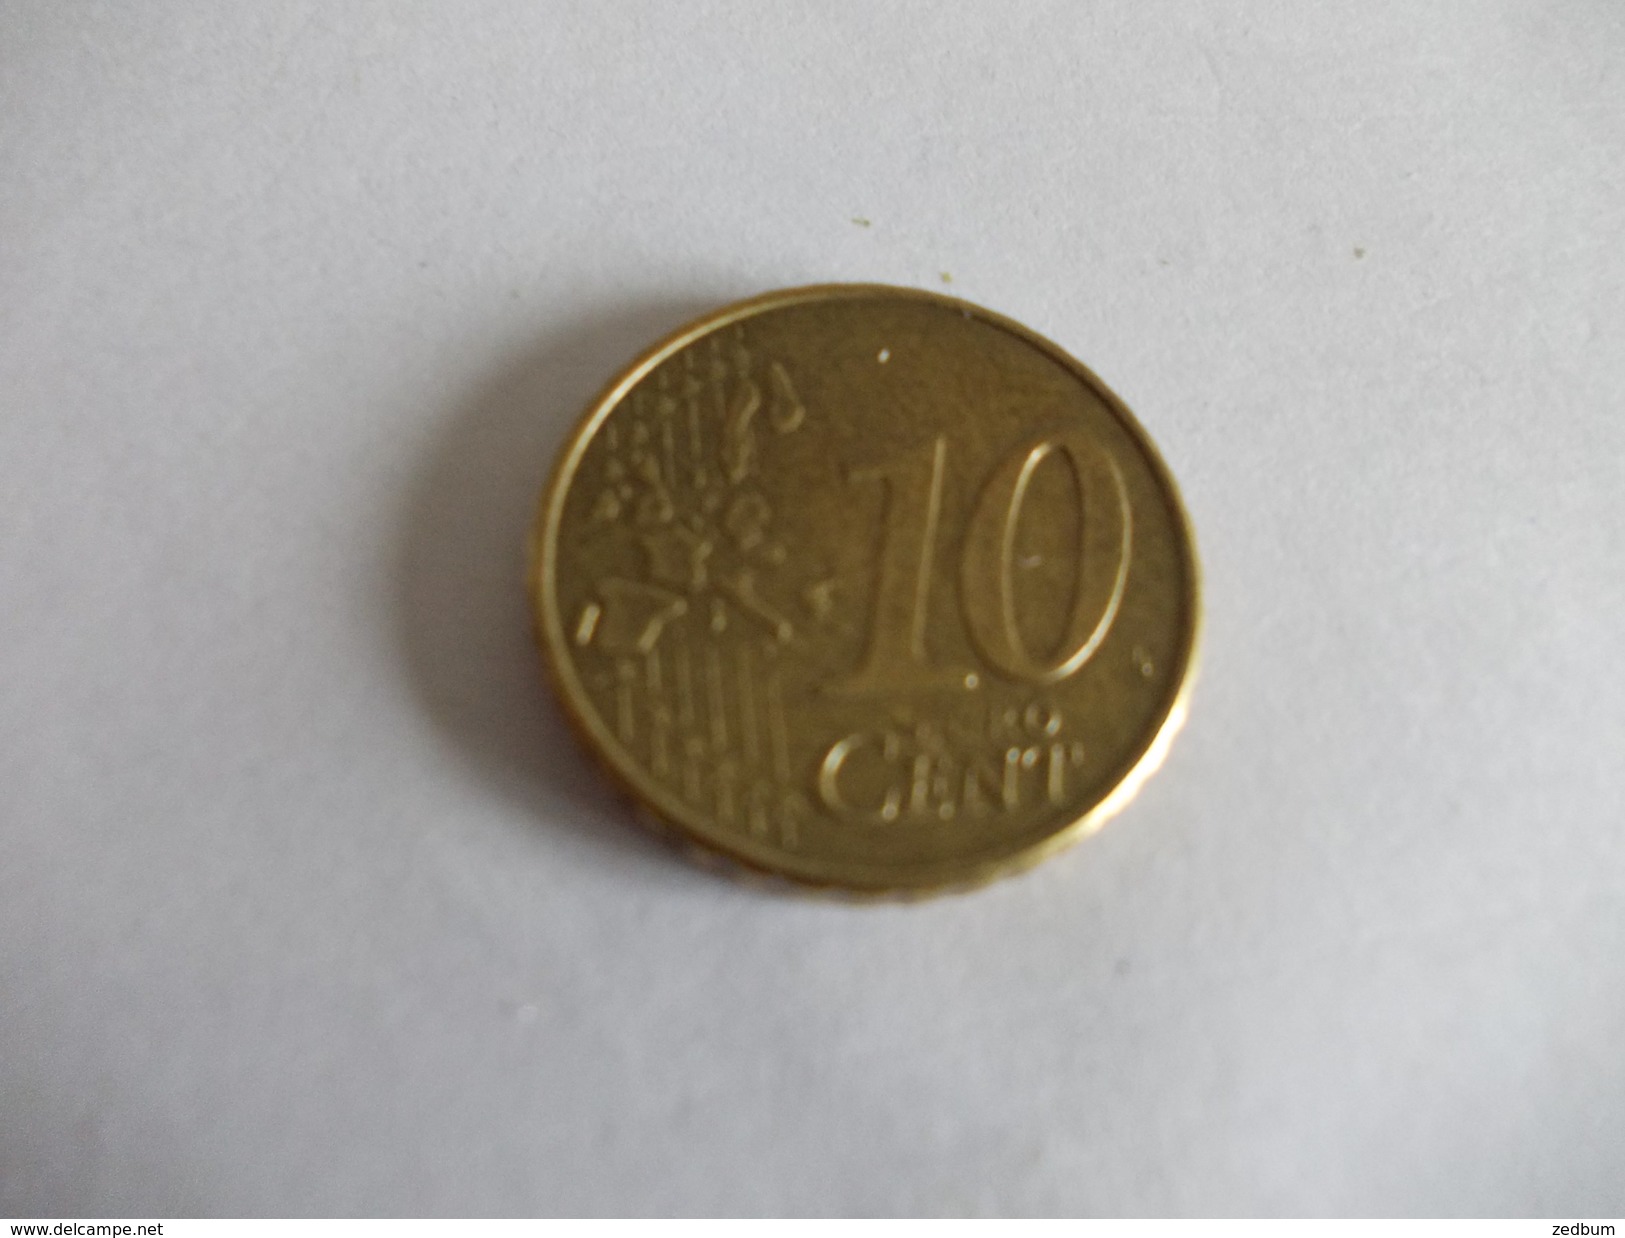 Monnaie Pièce De 10 Centimes D' Euro De Irlande Année 2002 Valeur Argus 2 &euro; - Irlande